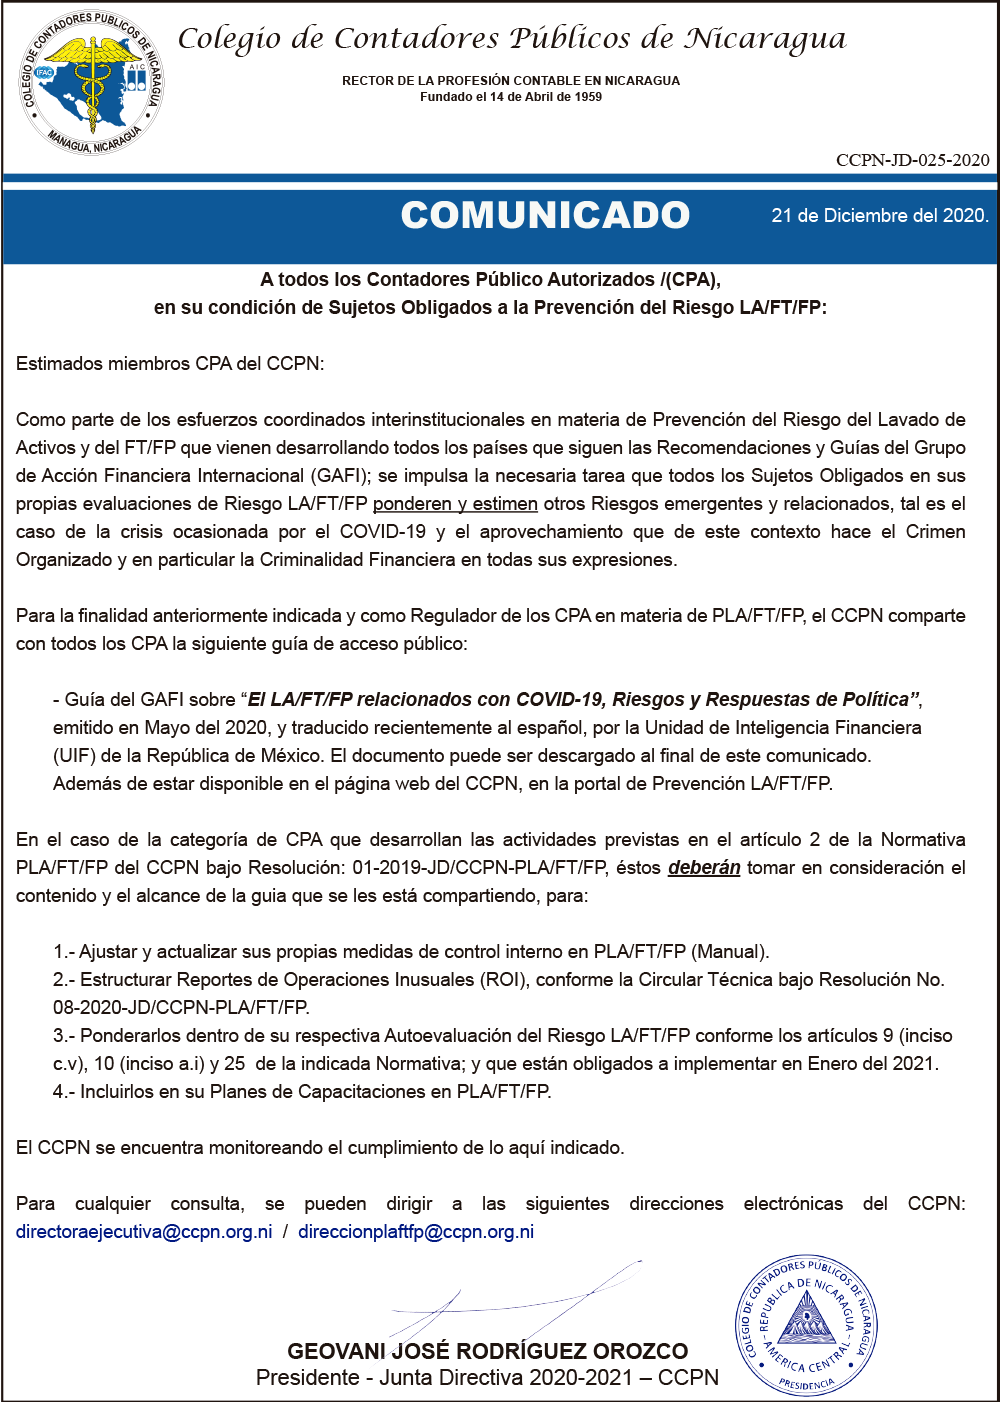 COMUNICADO-CCPN-JD-025-2020